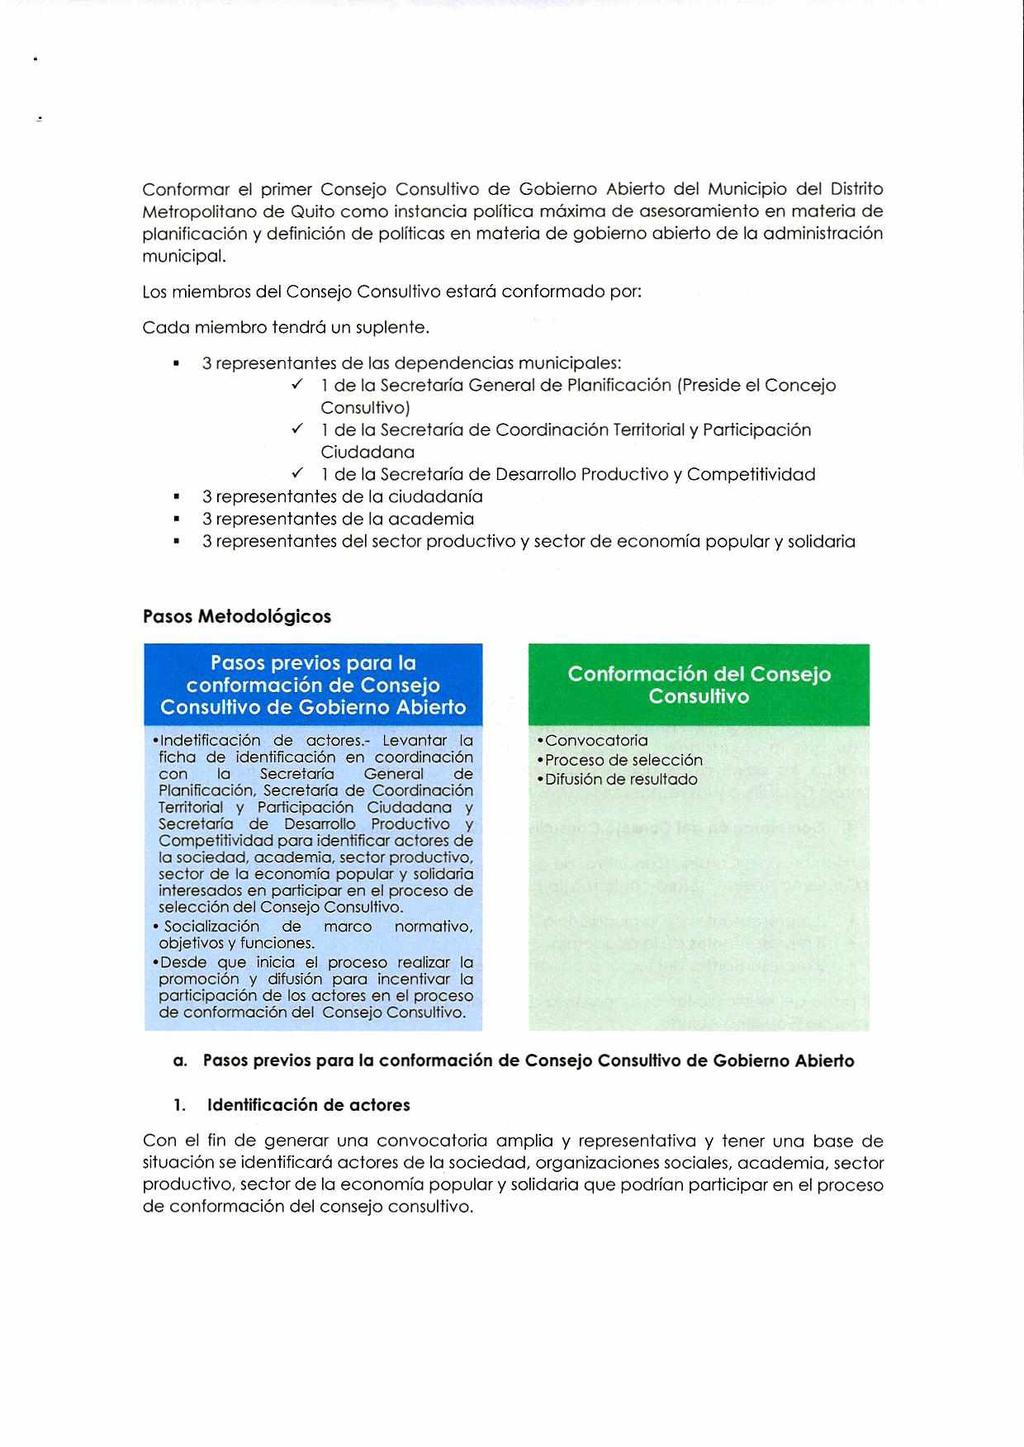 Conformar el primer Consejo Consultivo de Gobierno Abierto del Municipio del Distrito Metropolitano de Quito como instancia política máxima de asesoramiento en materia de planificación y definición